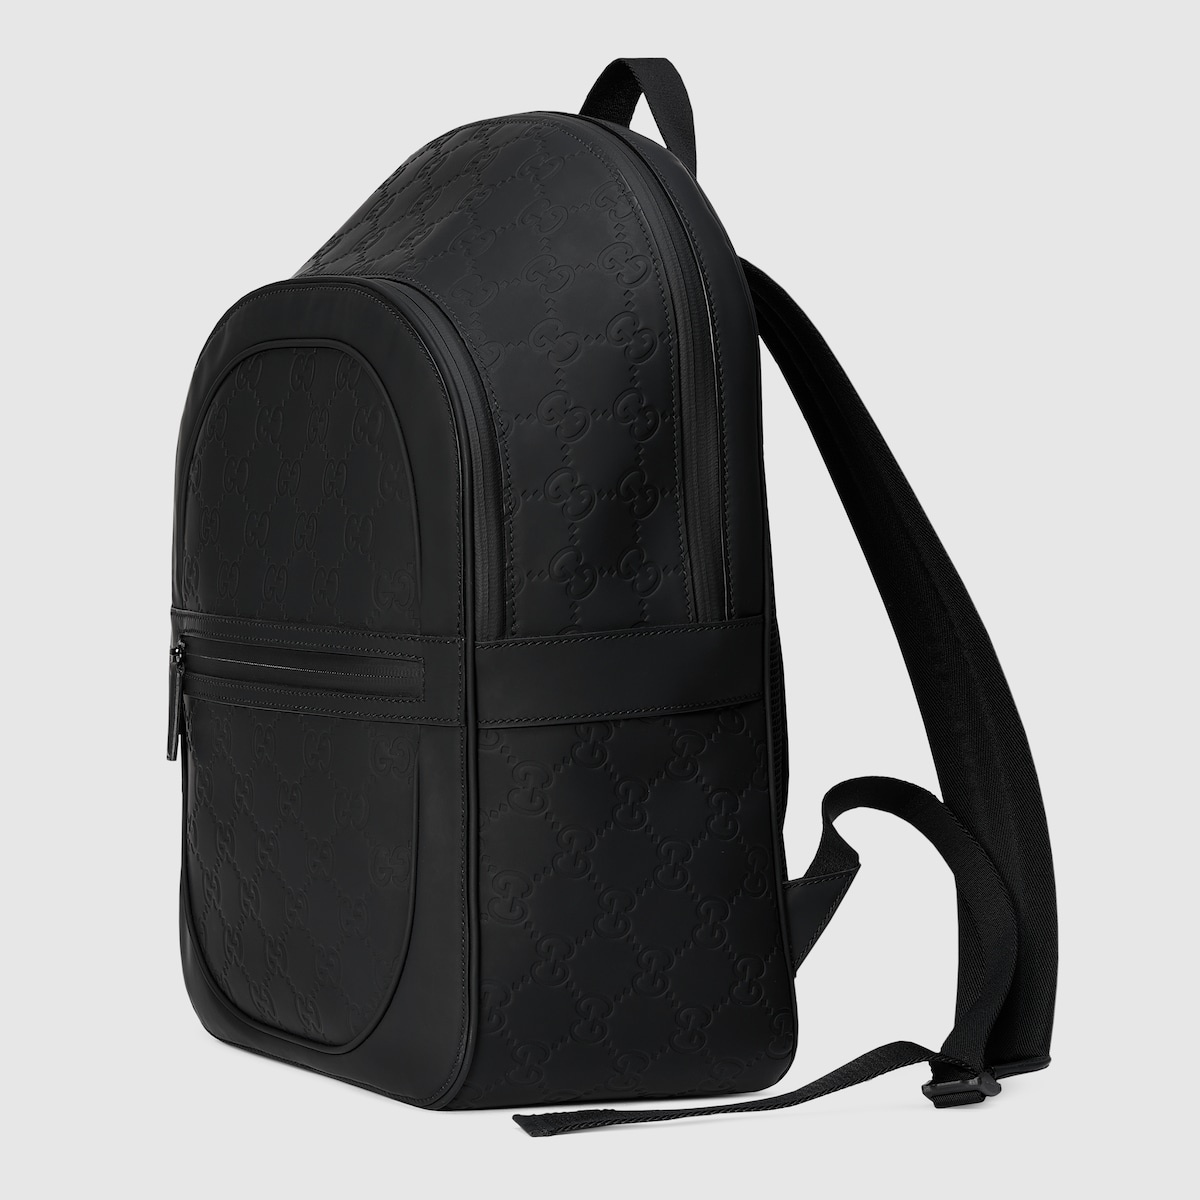 GG backpack - 2